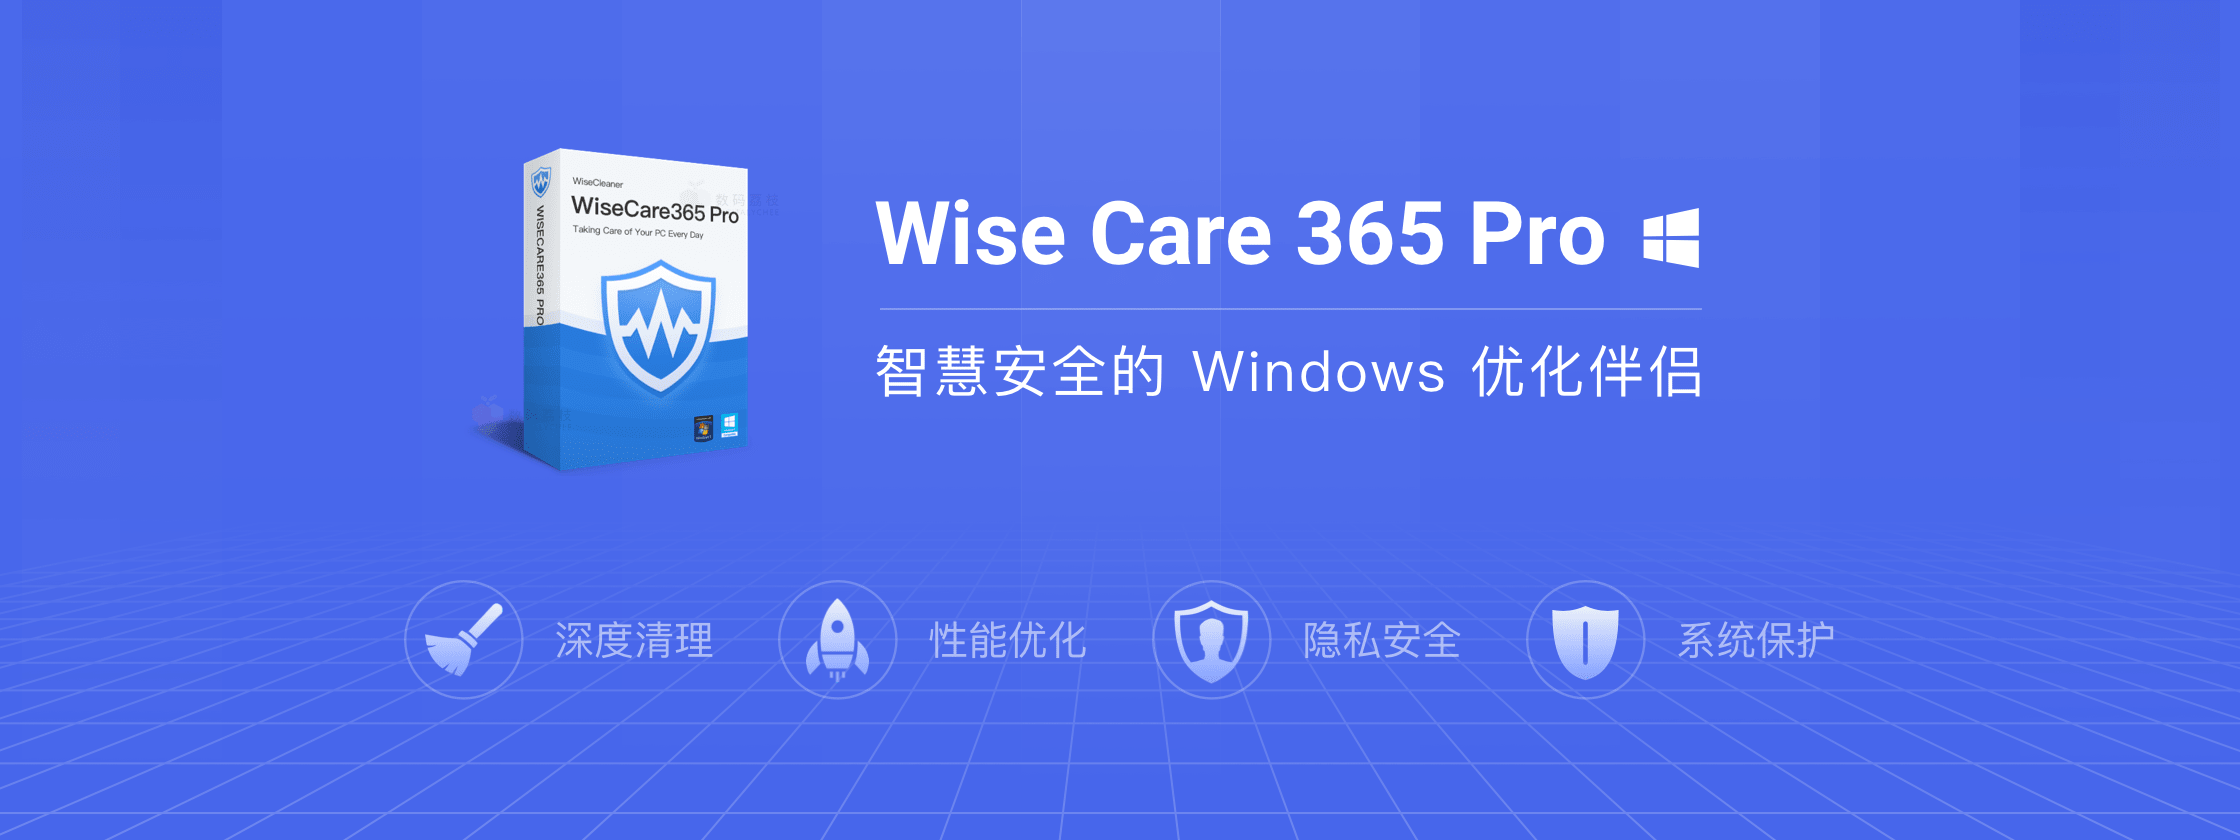 【正版特惠】Wise Care 365 Pro 系统优化清理软件 价格低至99永久！